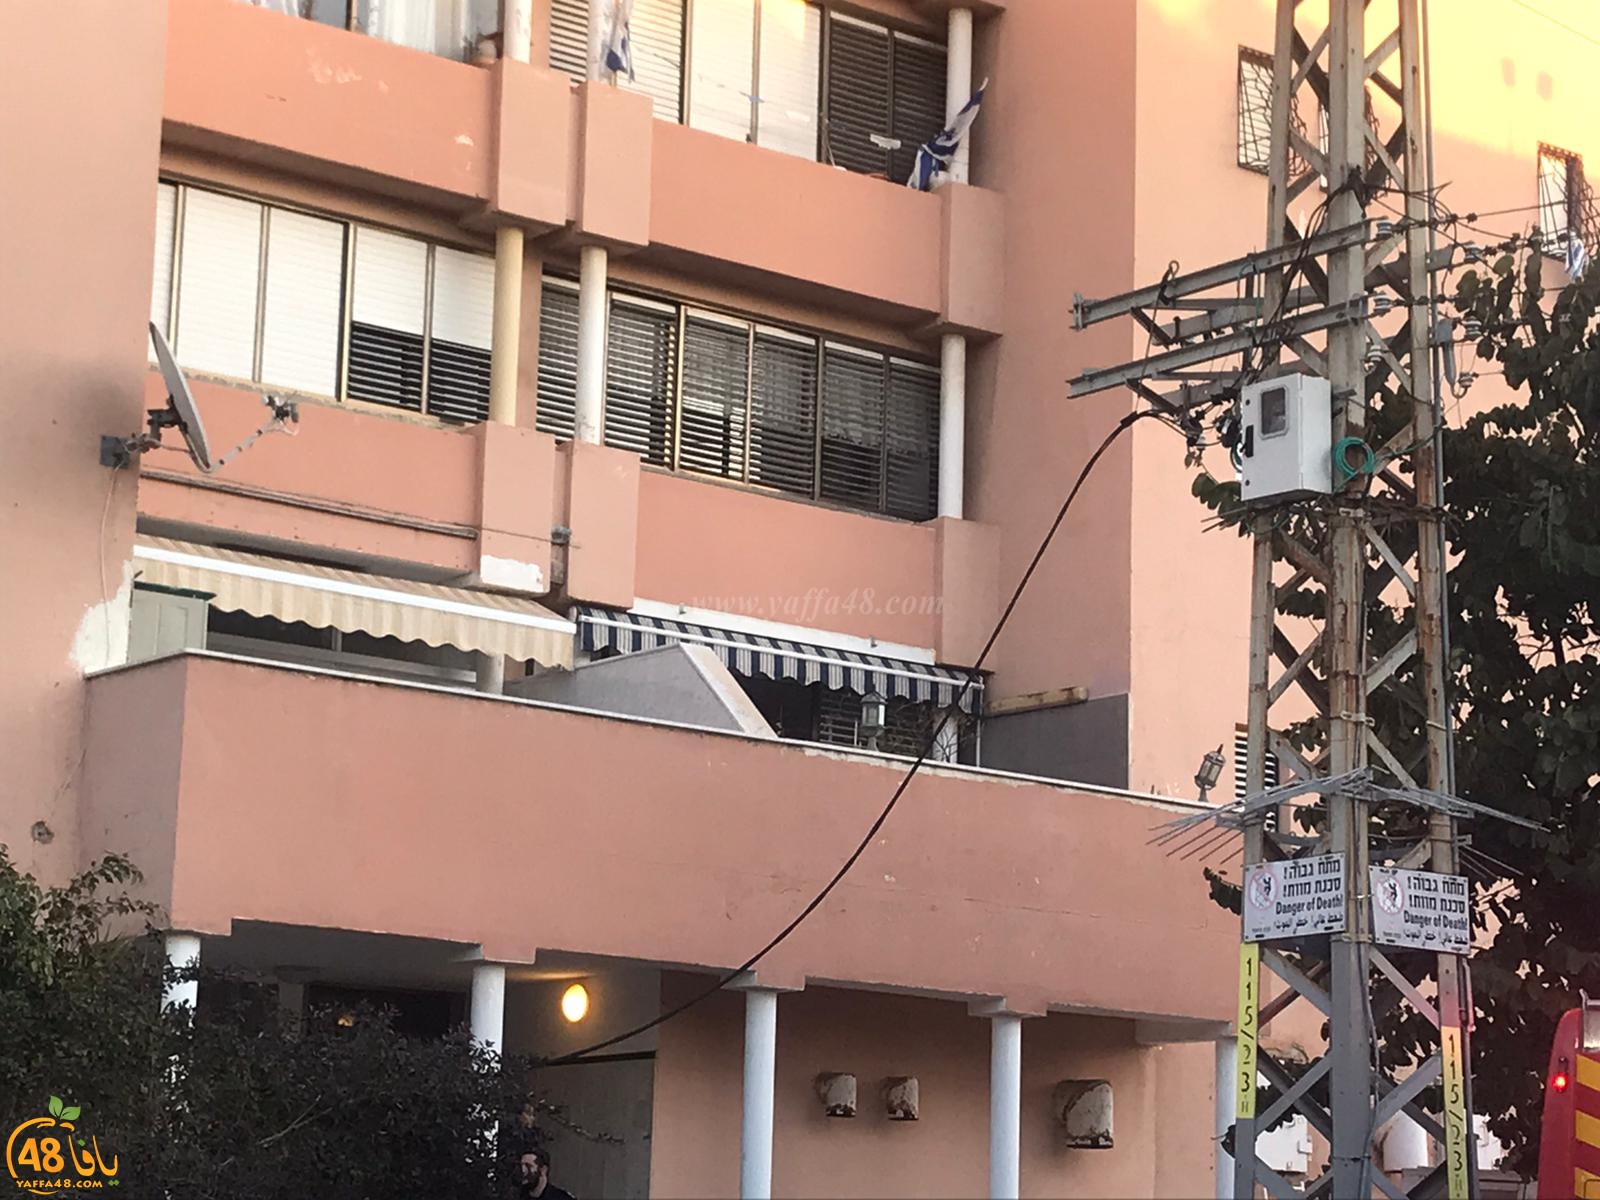  يافا: سقوط كوابل من عامود كهرباء قرب بيارة أبو سيف 